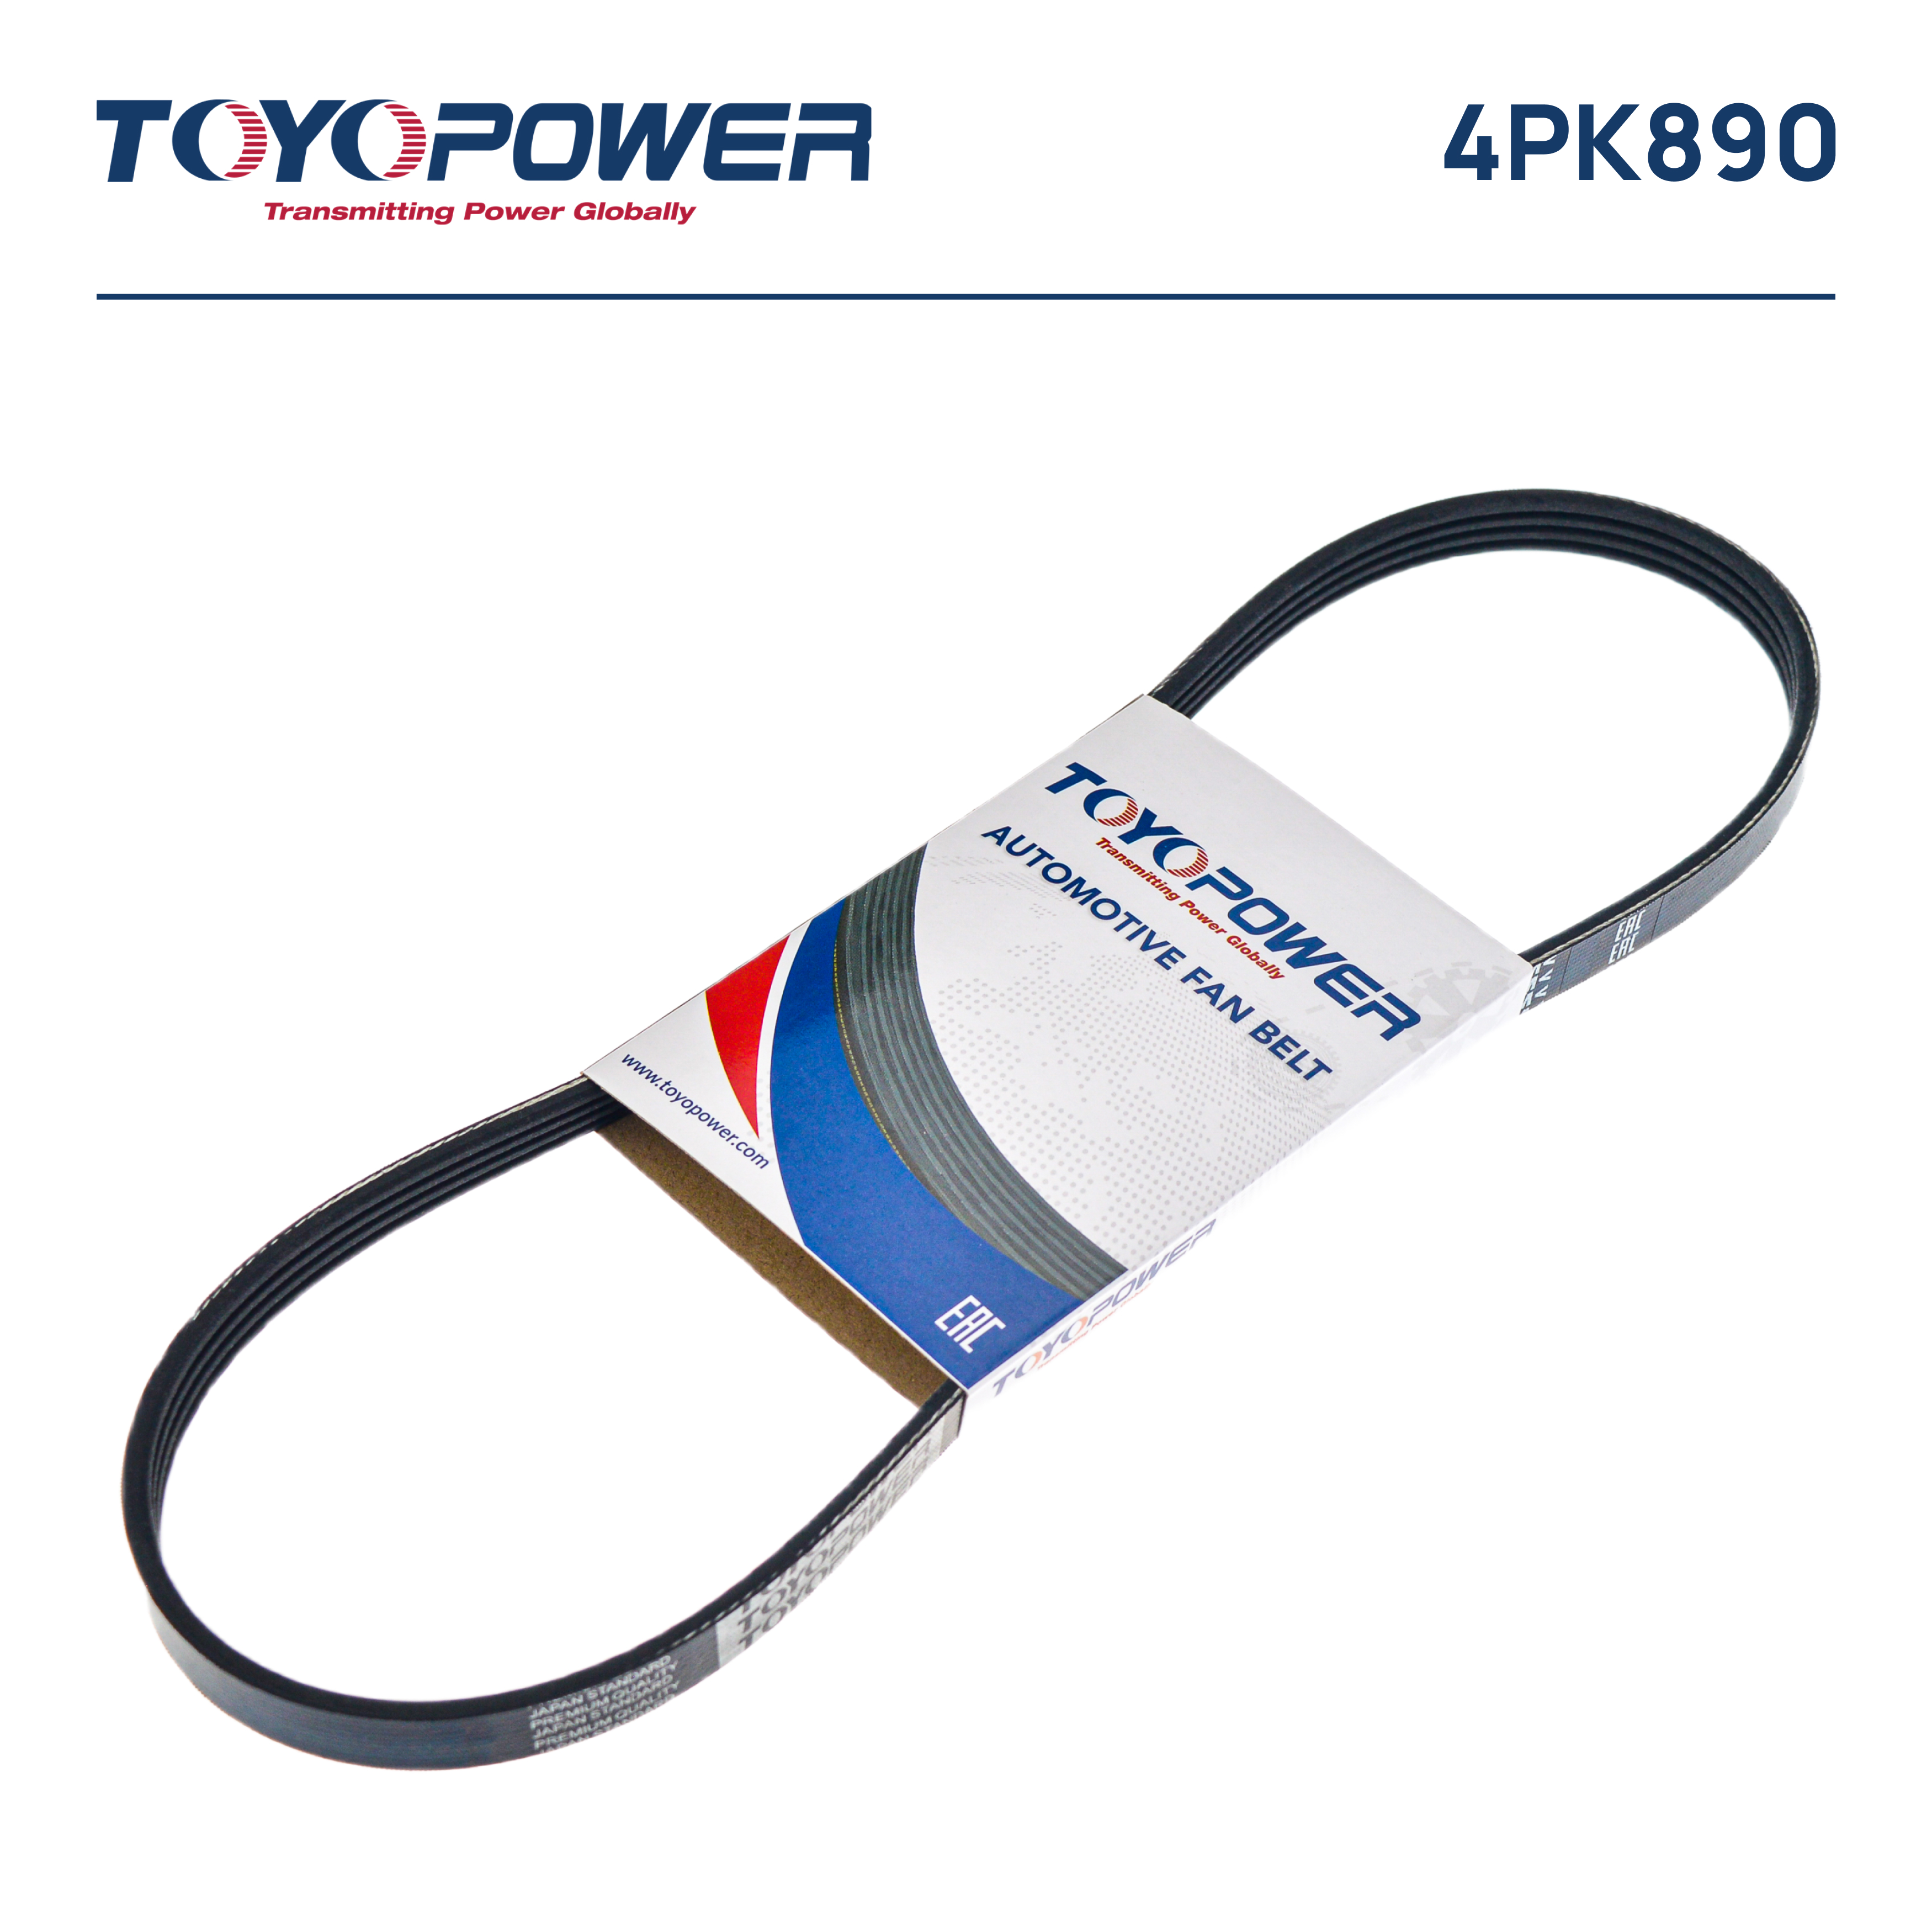 Ремень поликлиновый - Toyopower 4PK890